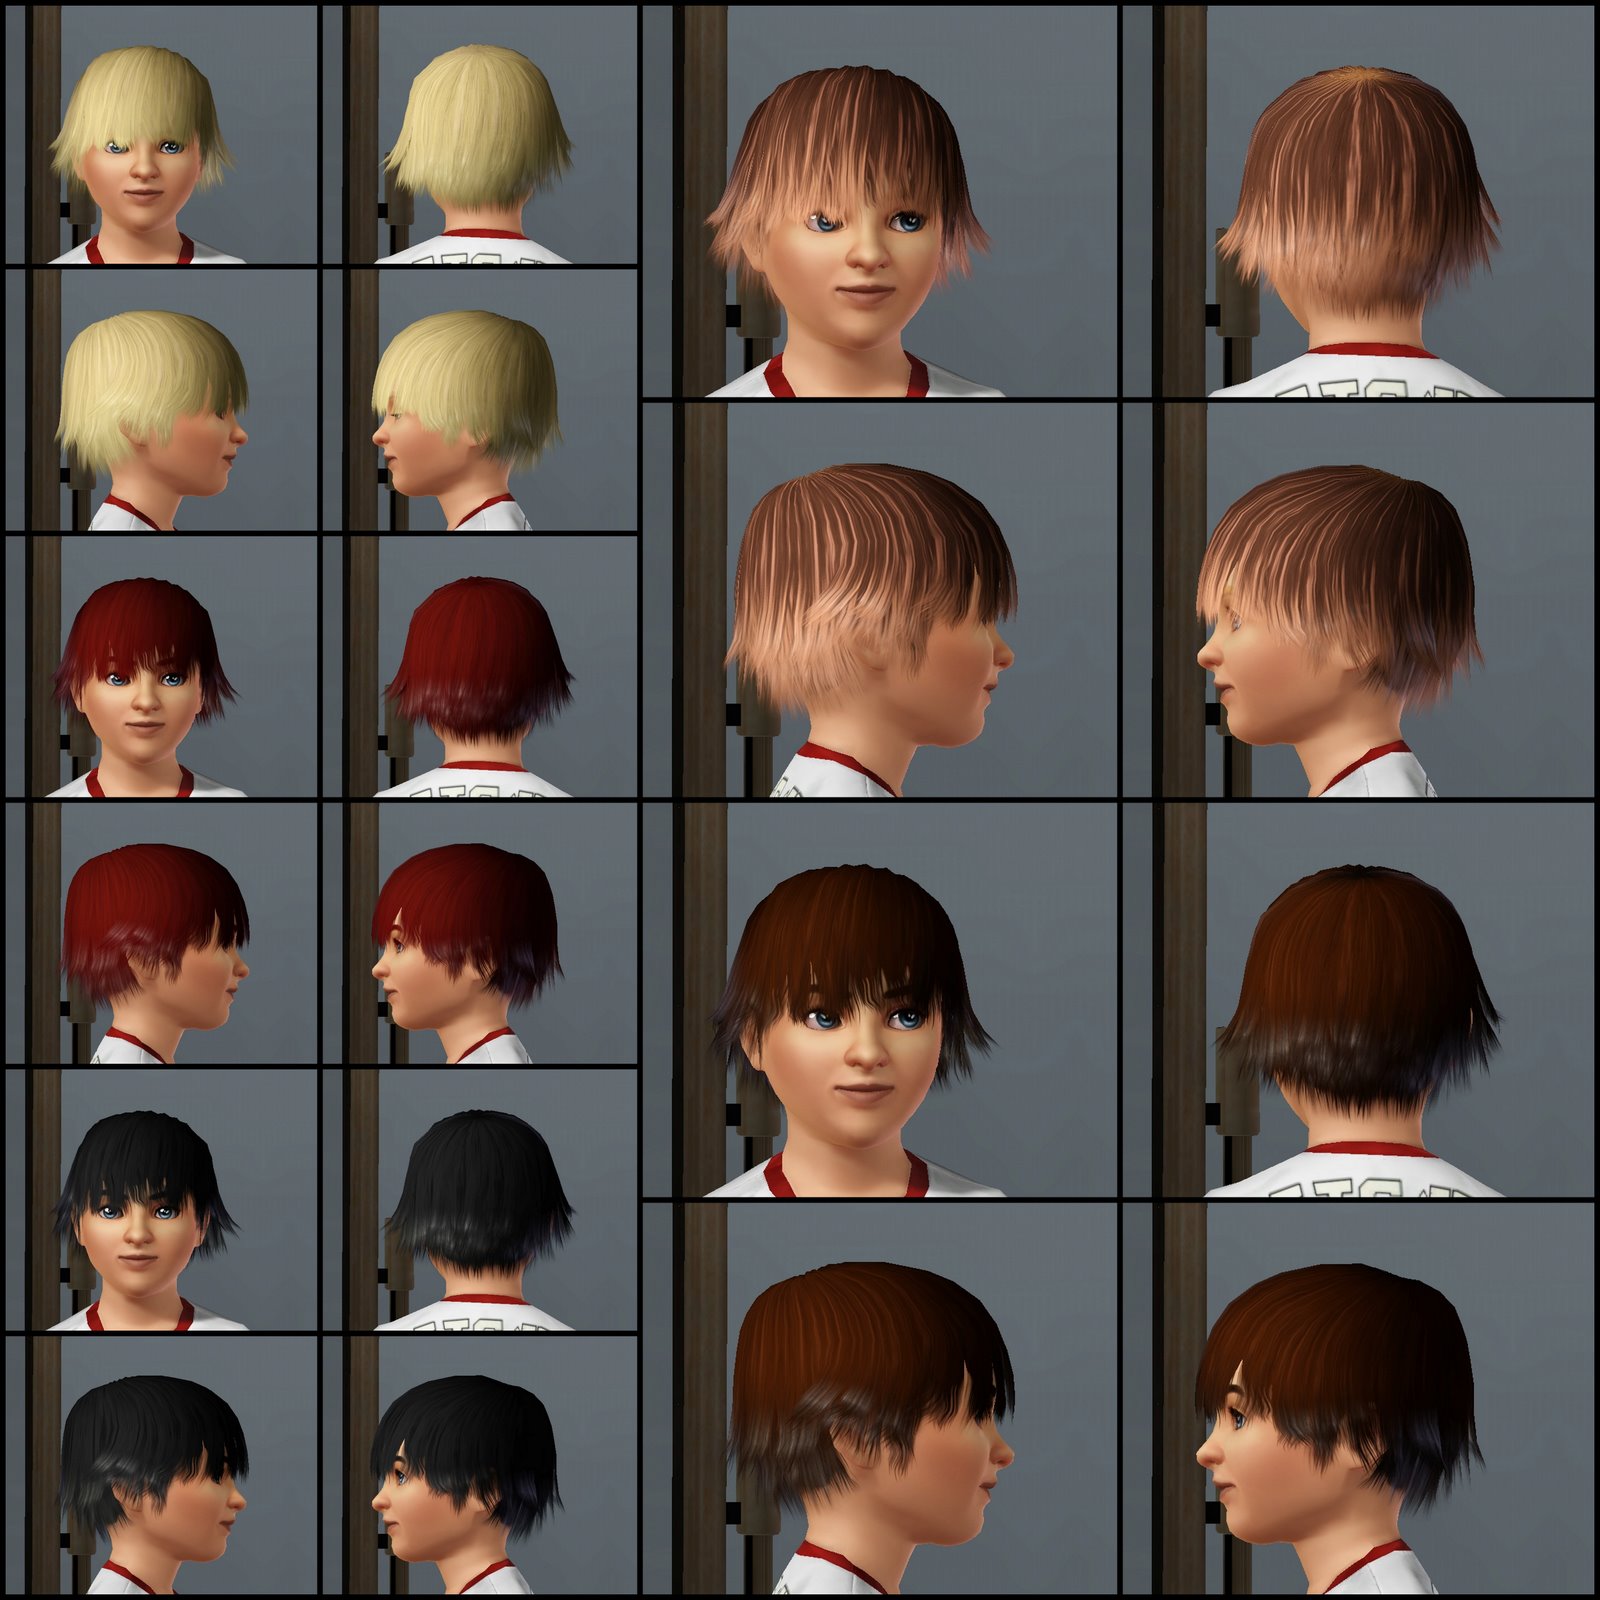 The Sims 3 Store: Hair Showroom: Choppy Haircut for Boys